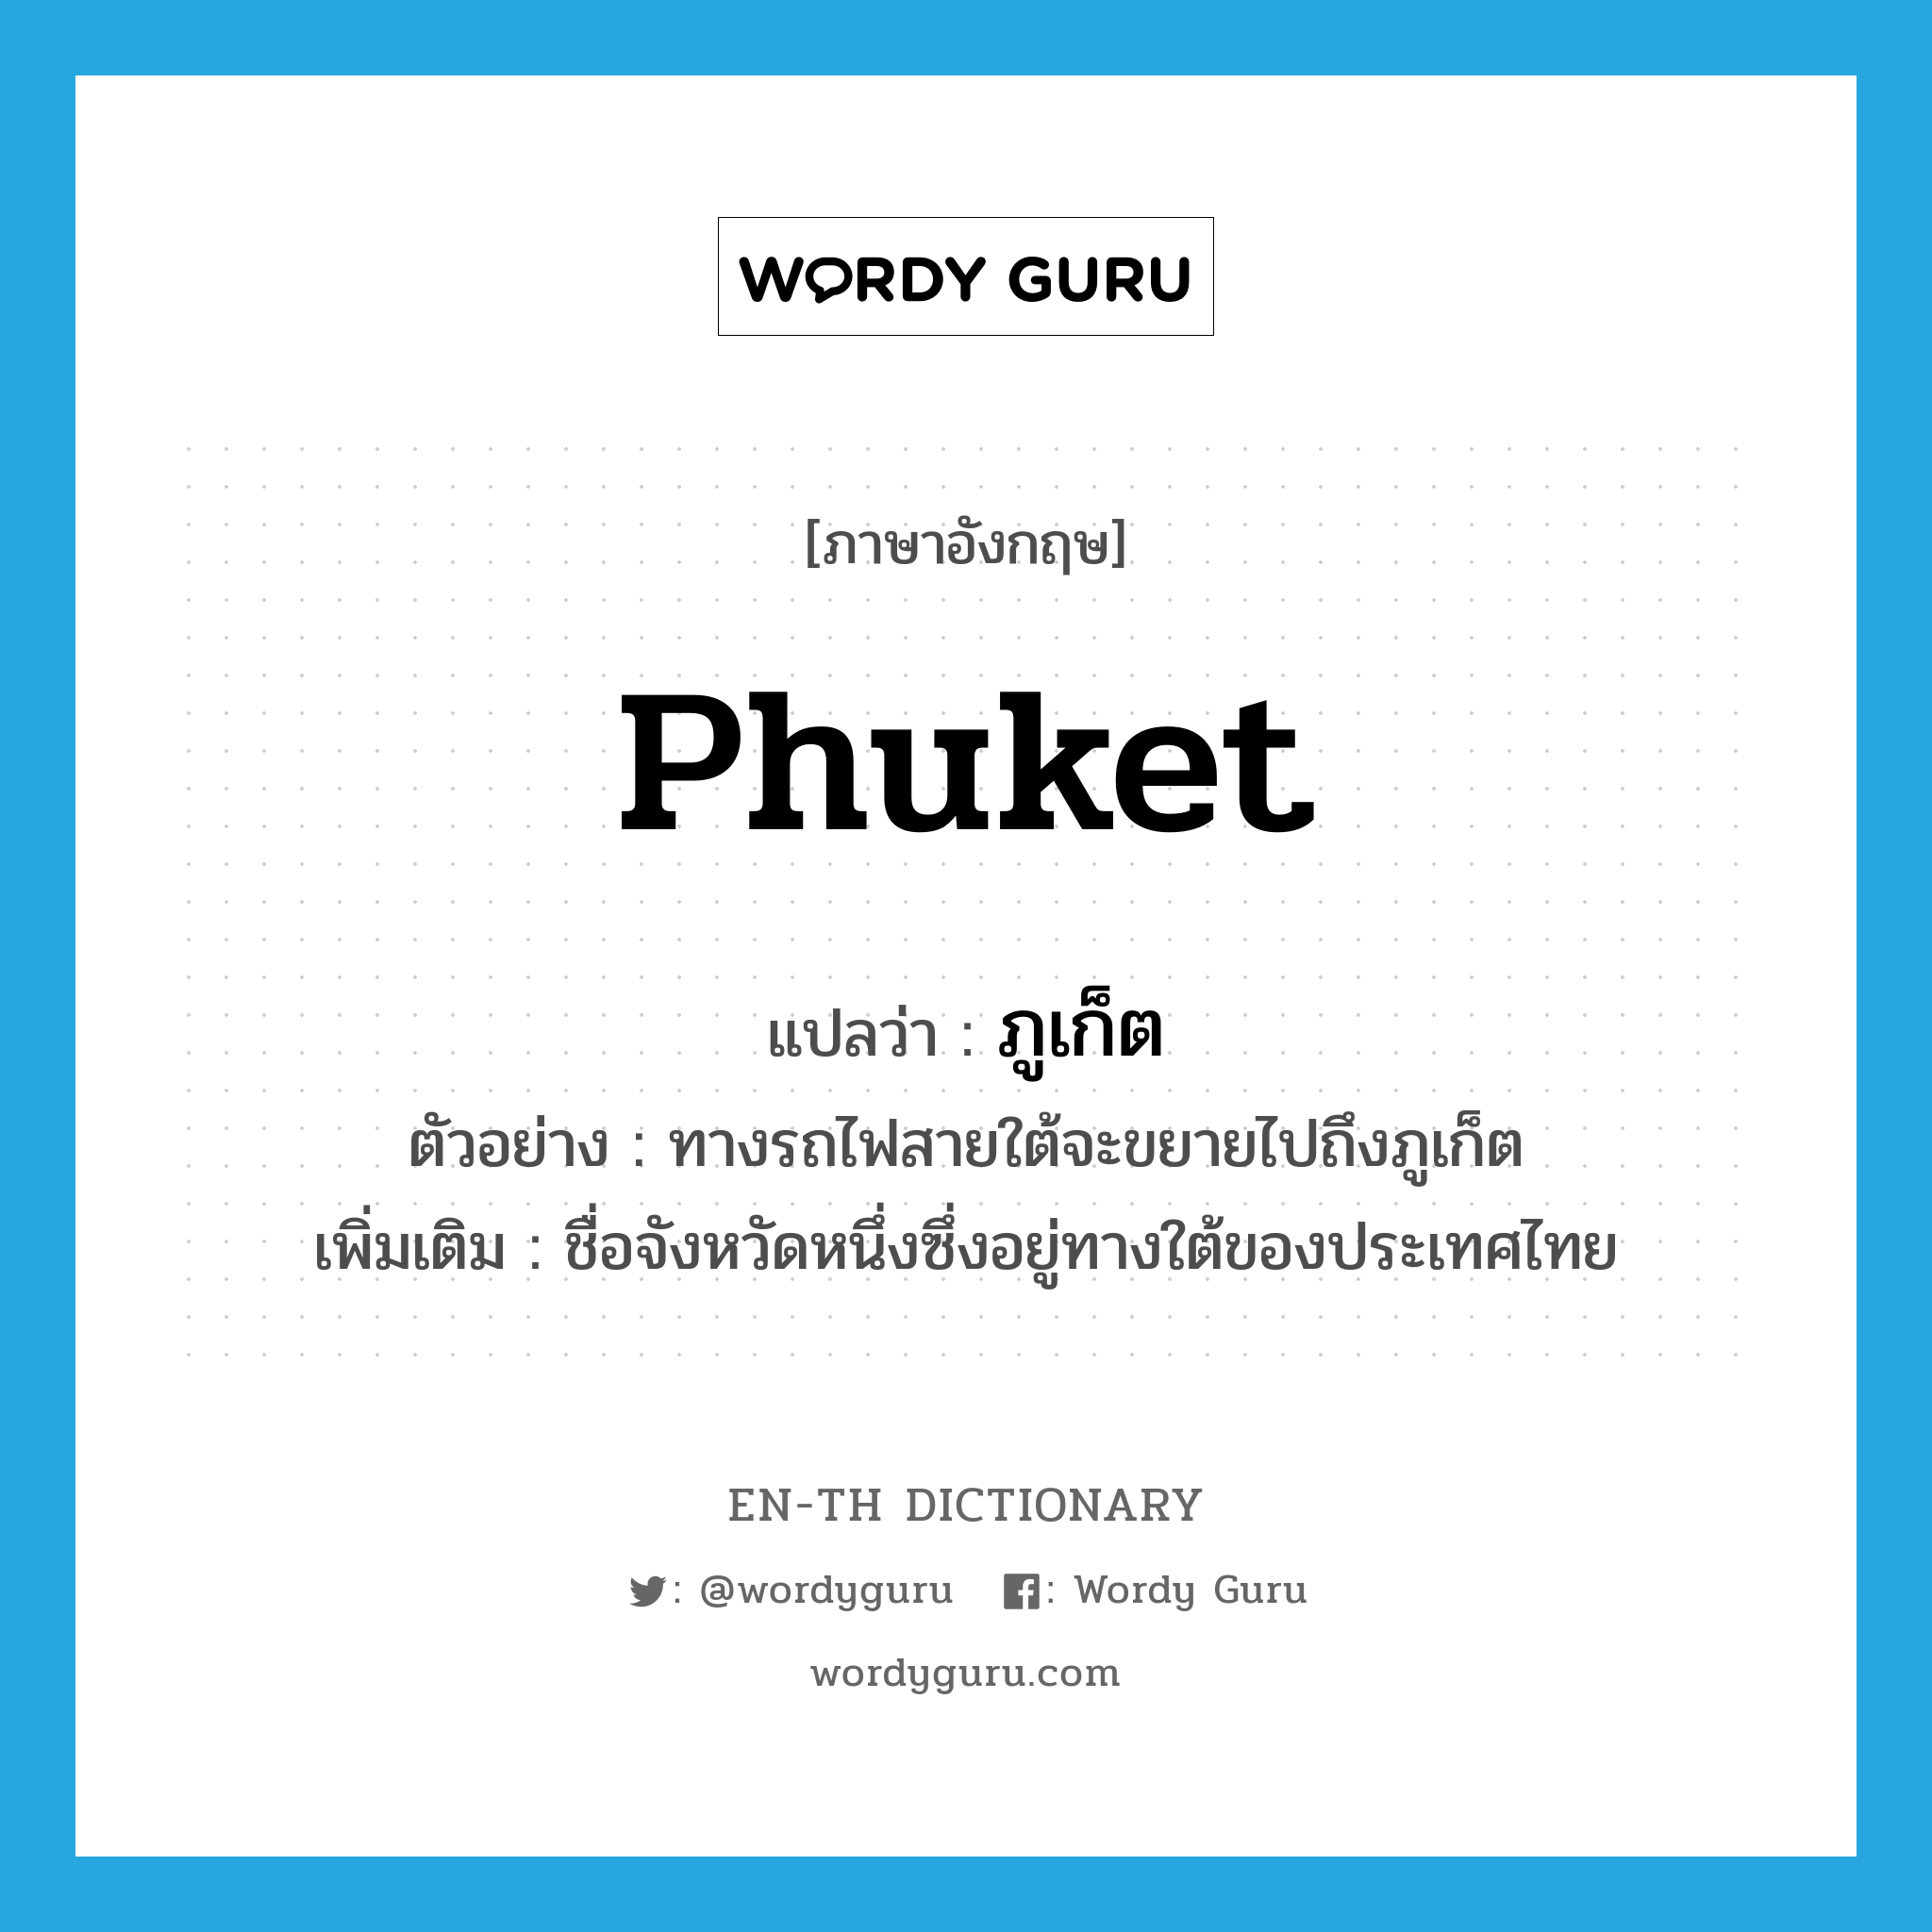 ภูเก็ต ภาษาอังกฤษ?, คำศัพท์ภาษาอังกฤษ ภูเก็ต แปลว่า Phuket ประเภท N ตัวอย่าง ทางรถไฟสายใต้จะขยายไปถึงภูเก็ต เพิ่มเติม ชื่อจังหวัดหนึ่งซึ่งอยู่ทางใต้ของประเทศไทย หมวด N